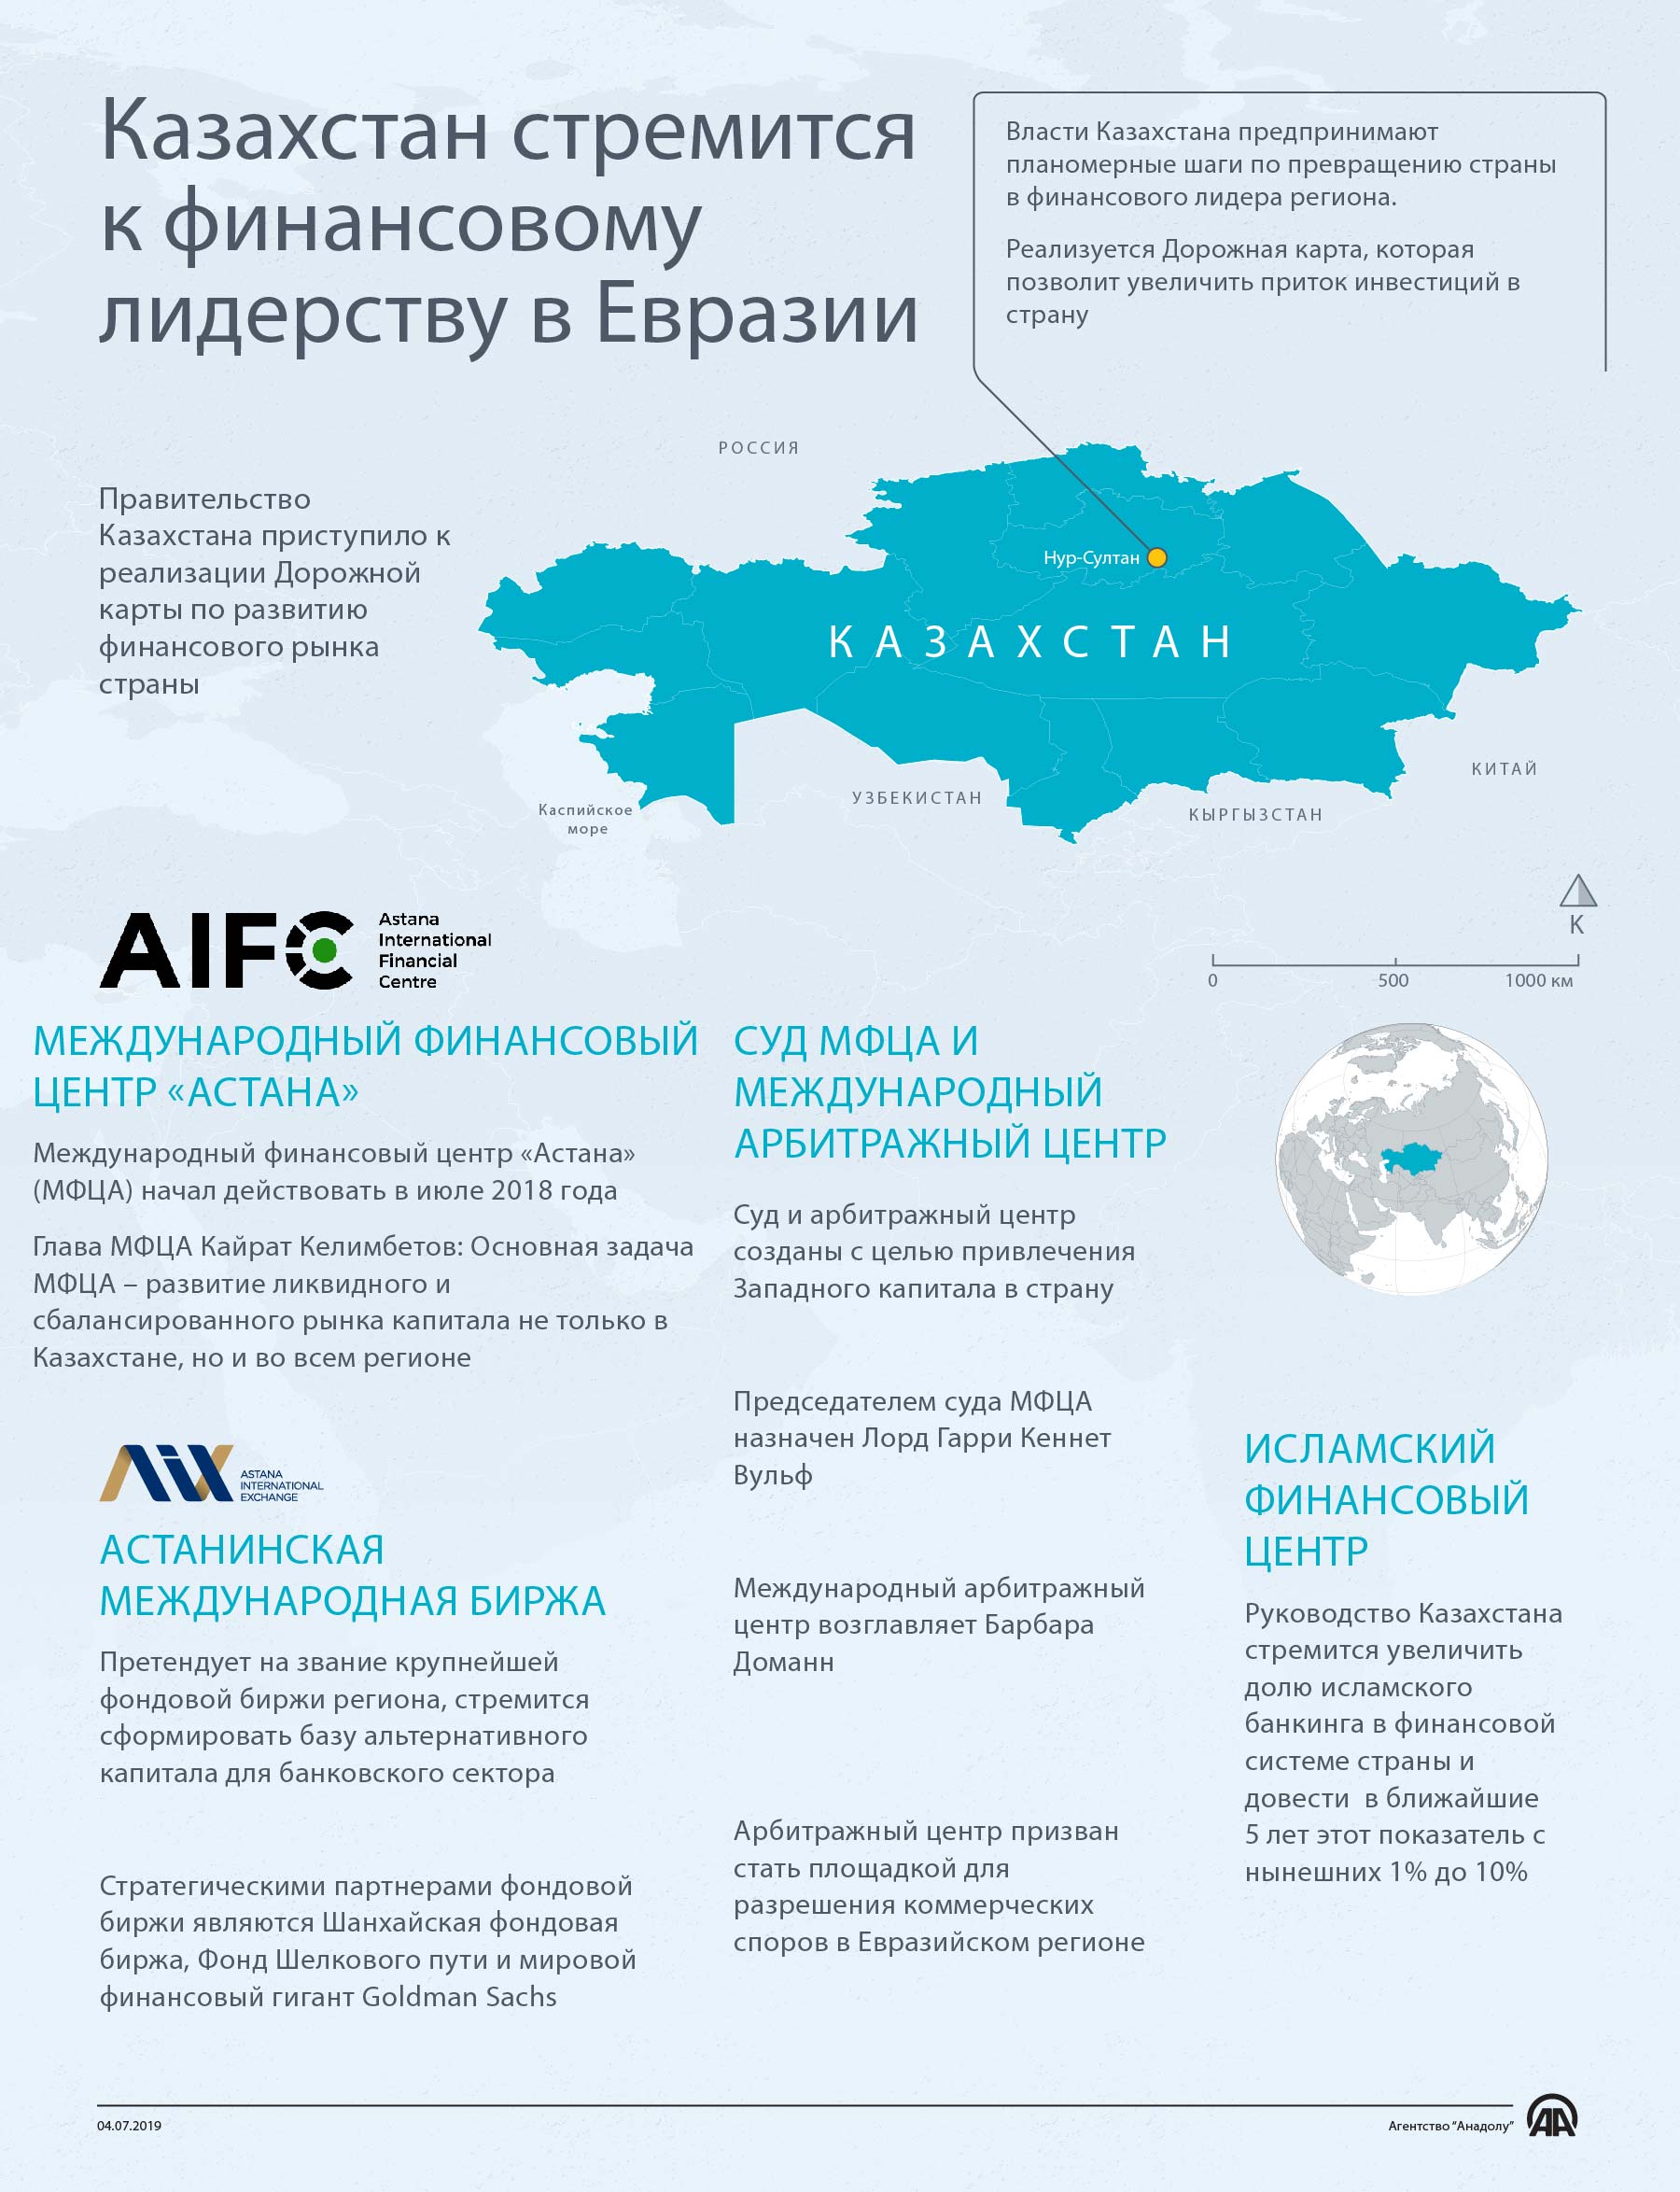 Казахстан стремится к финансовому лидерству в Евразии